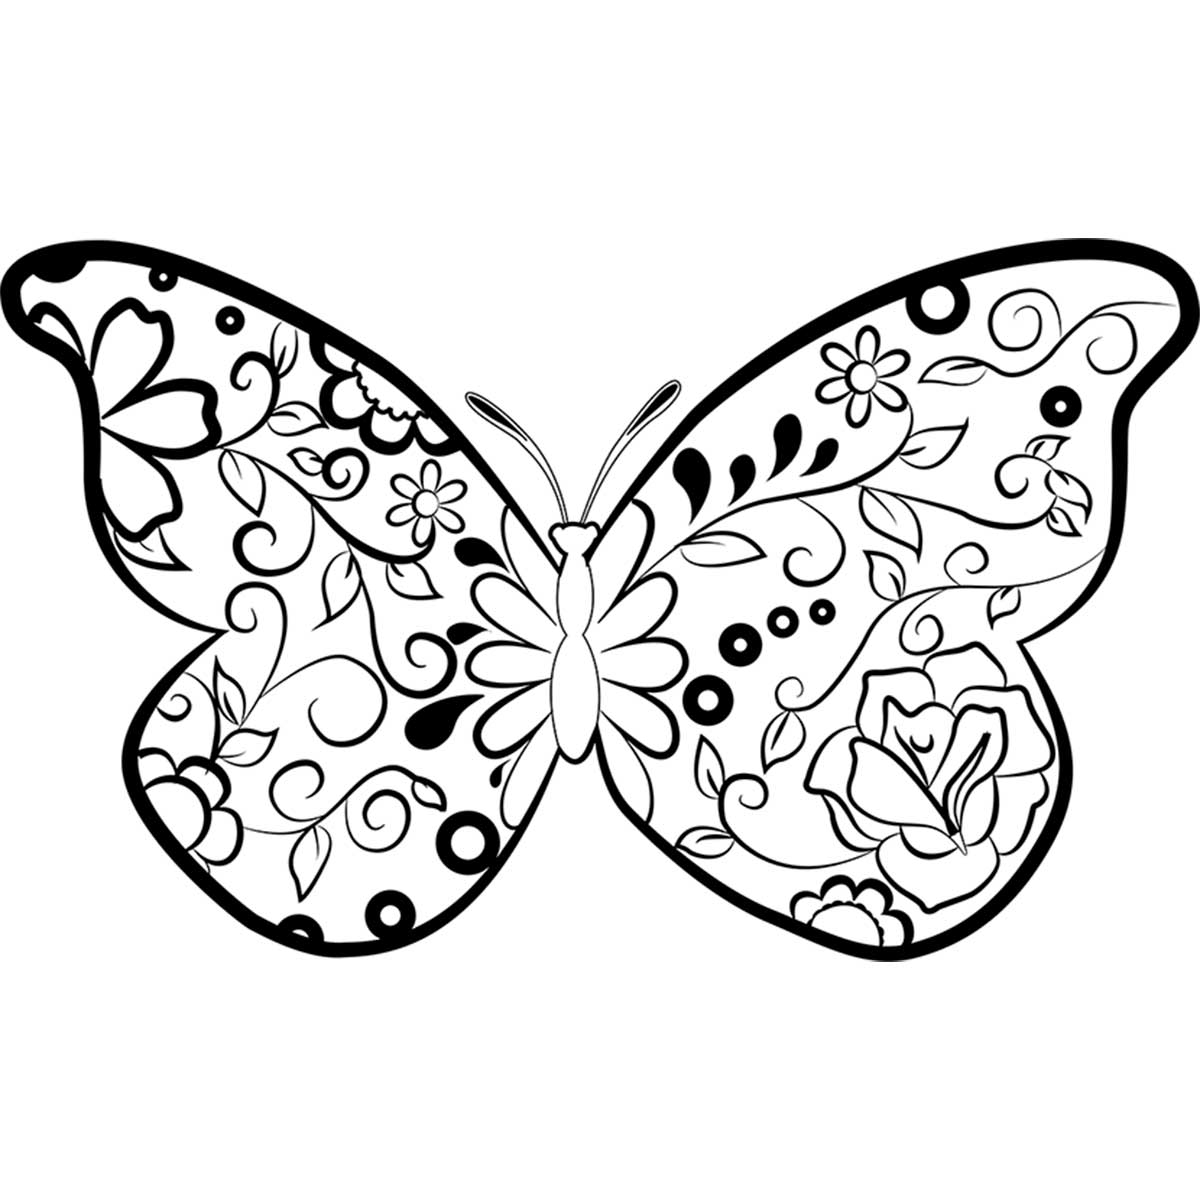 Una farfalla con pelle a motivo floreale disegno da colorare